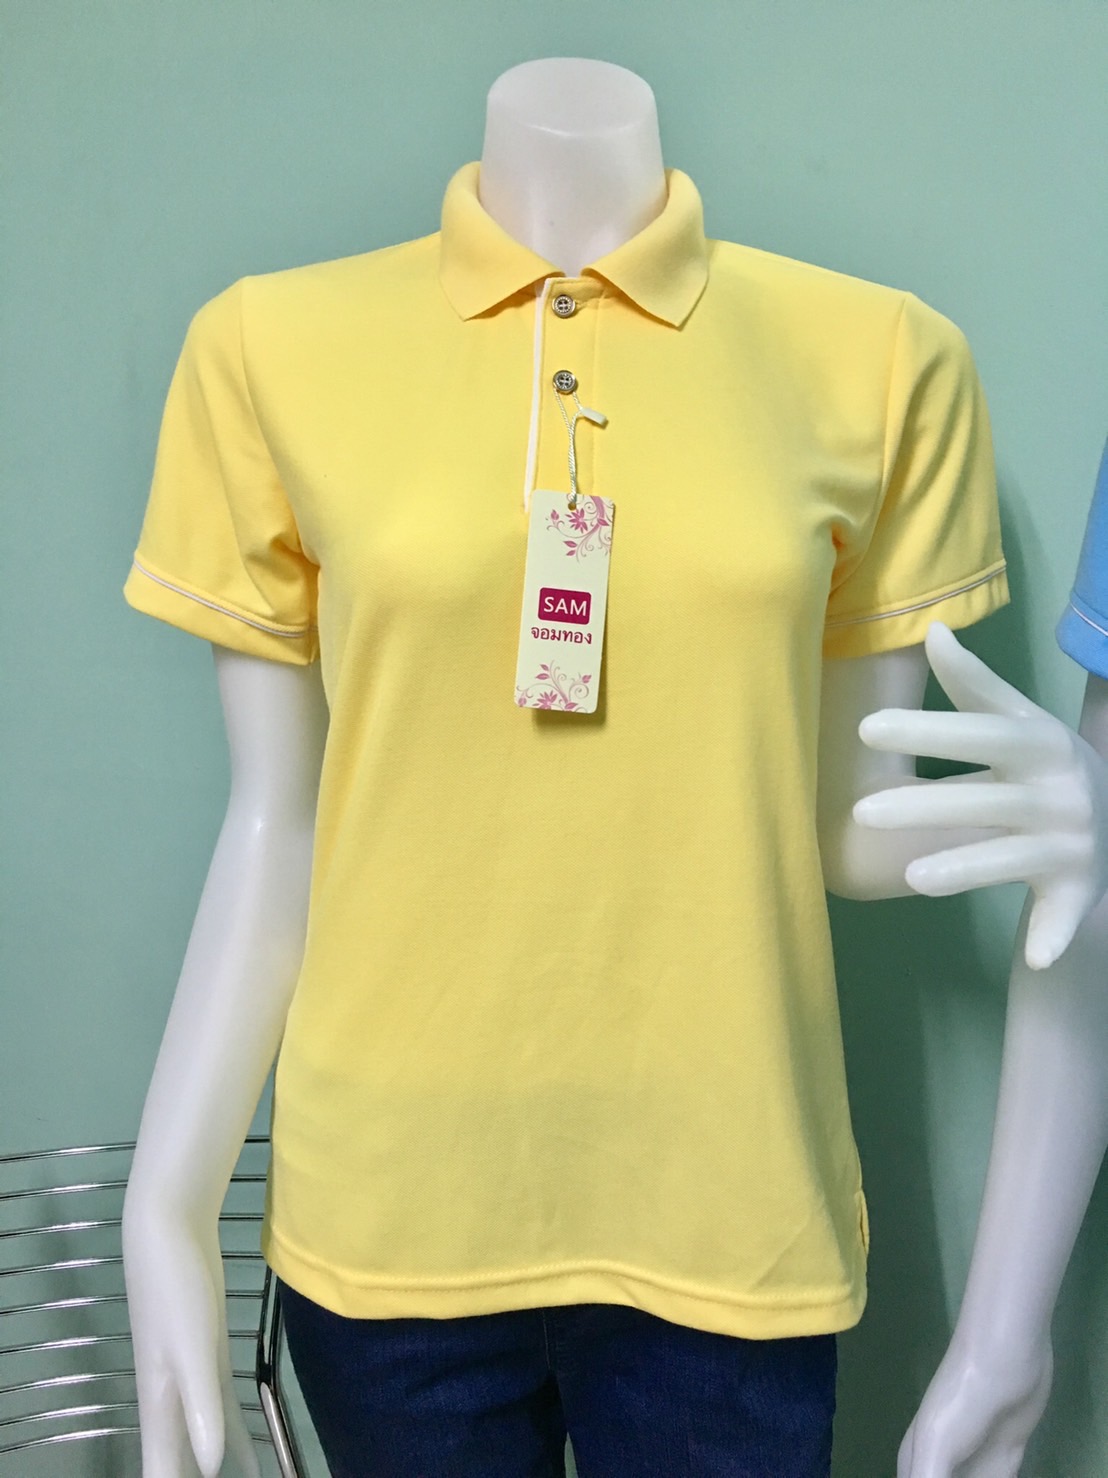 C H shop เสื้อโปโลสีเหลือง ทรงผู้ชายทรงผู้หญิง ชุดทำงาน สีเหลือง